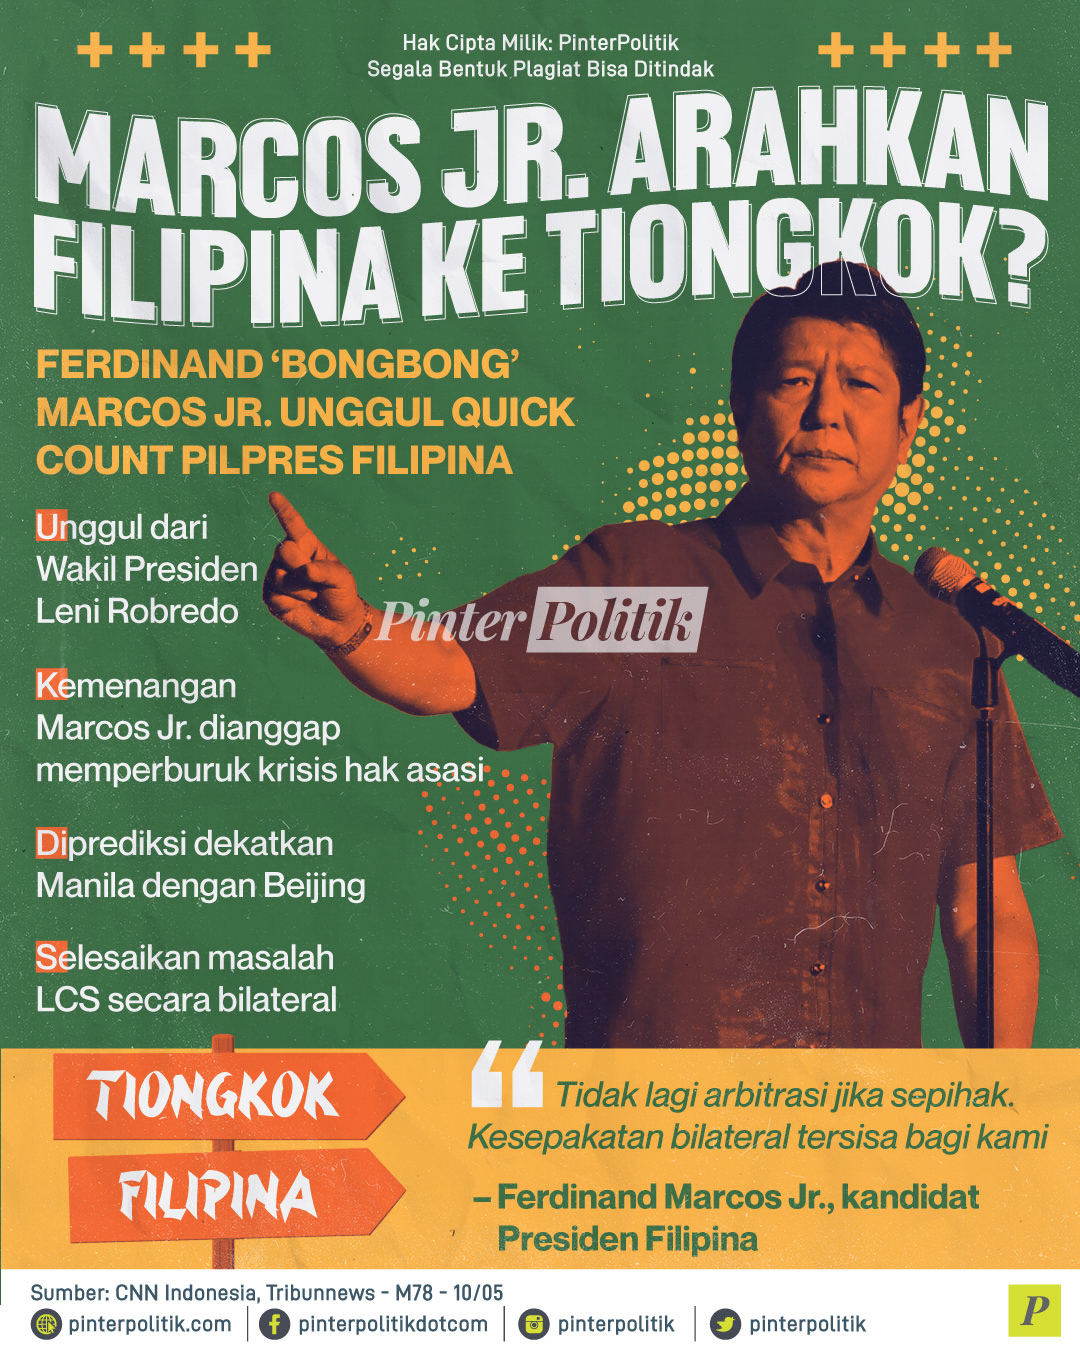 Marcos Jr. Arahkan Filipina ke Tiongkok